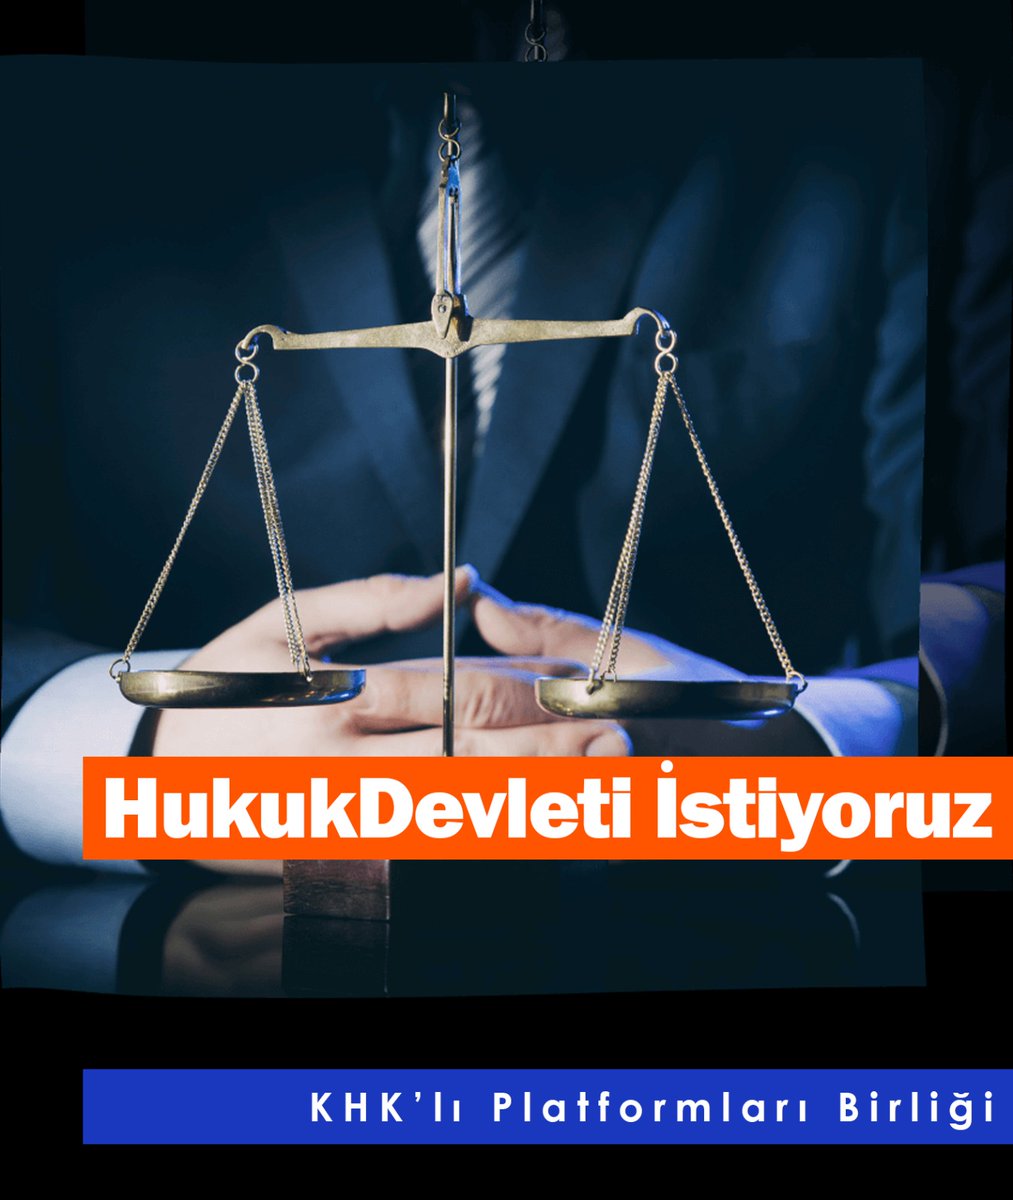 OHAL’in Toplumsal Maliyetler Raporunda OHAL ve KHK’ler ile devamında yürürlüğe konulan uygulamaların Türkiye’nin “Hukuk Devleti” olmaktan tamamen uzaklaştığını ve hiçkimsenin hukuk güvencesinin olmadığı açık ve somut ortaya koymuştur. HukukDevleti İstiyoruz